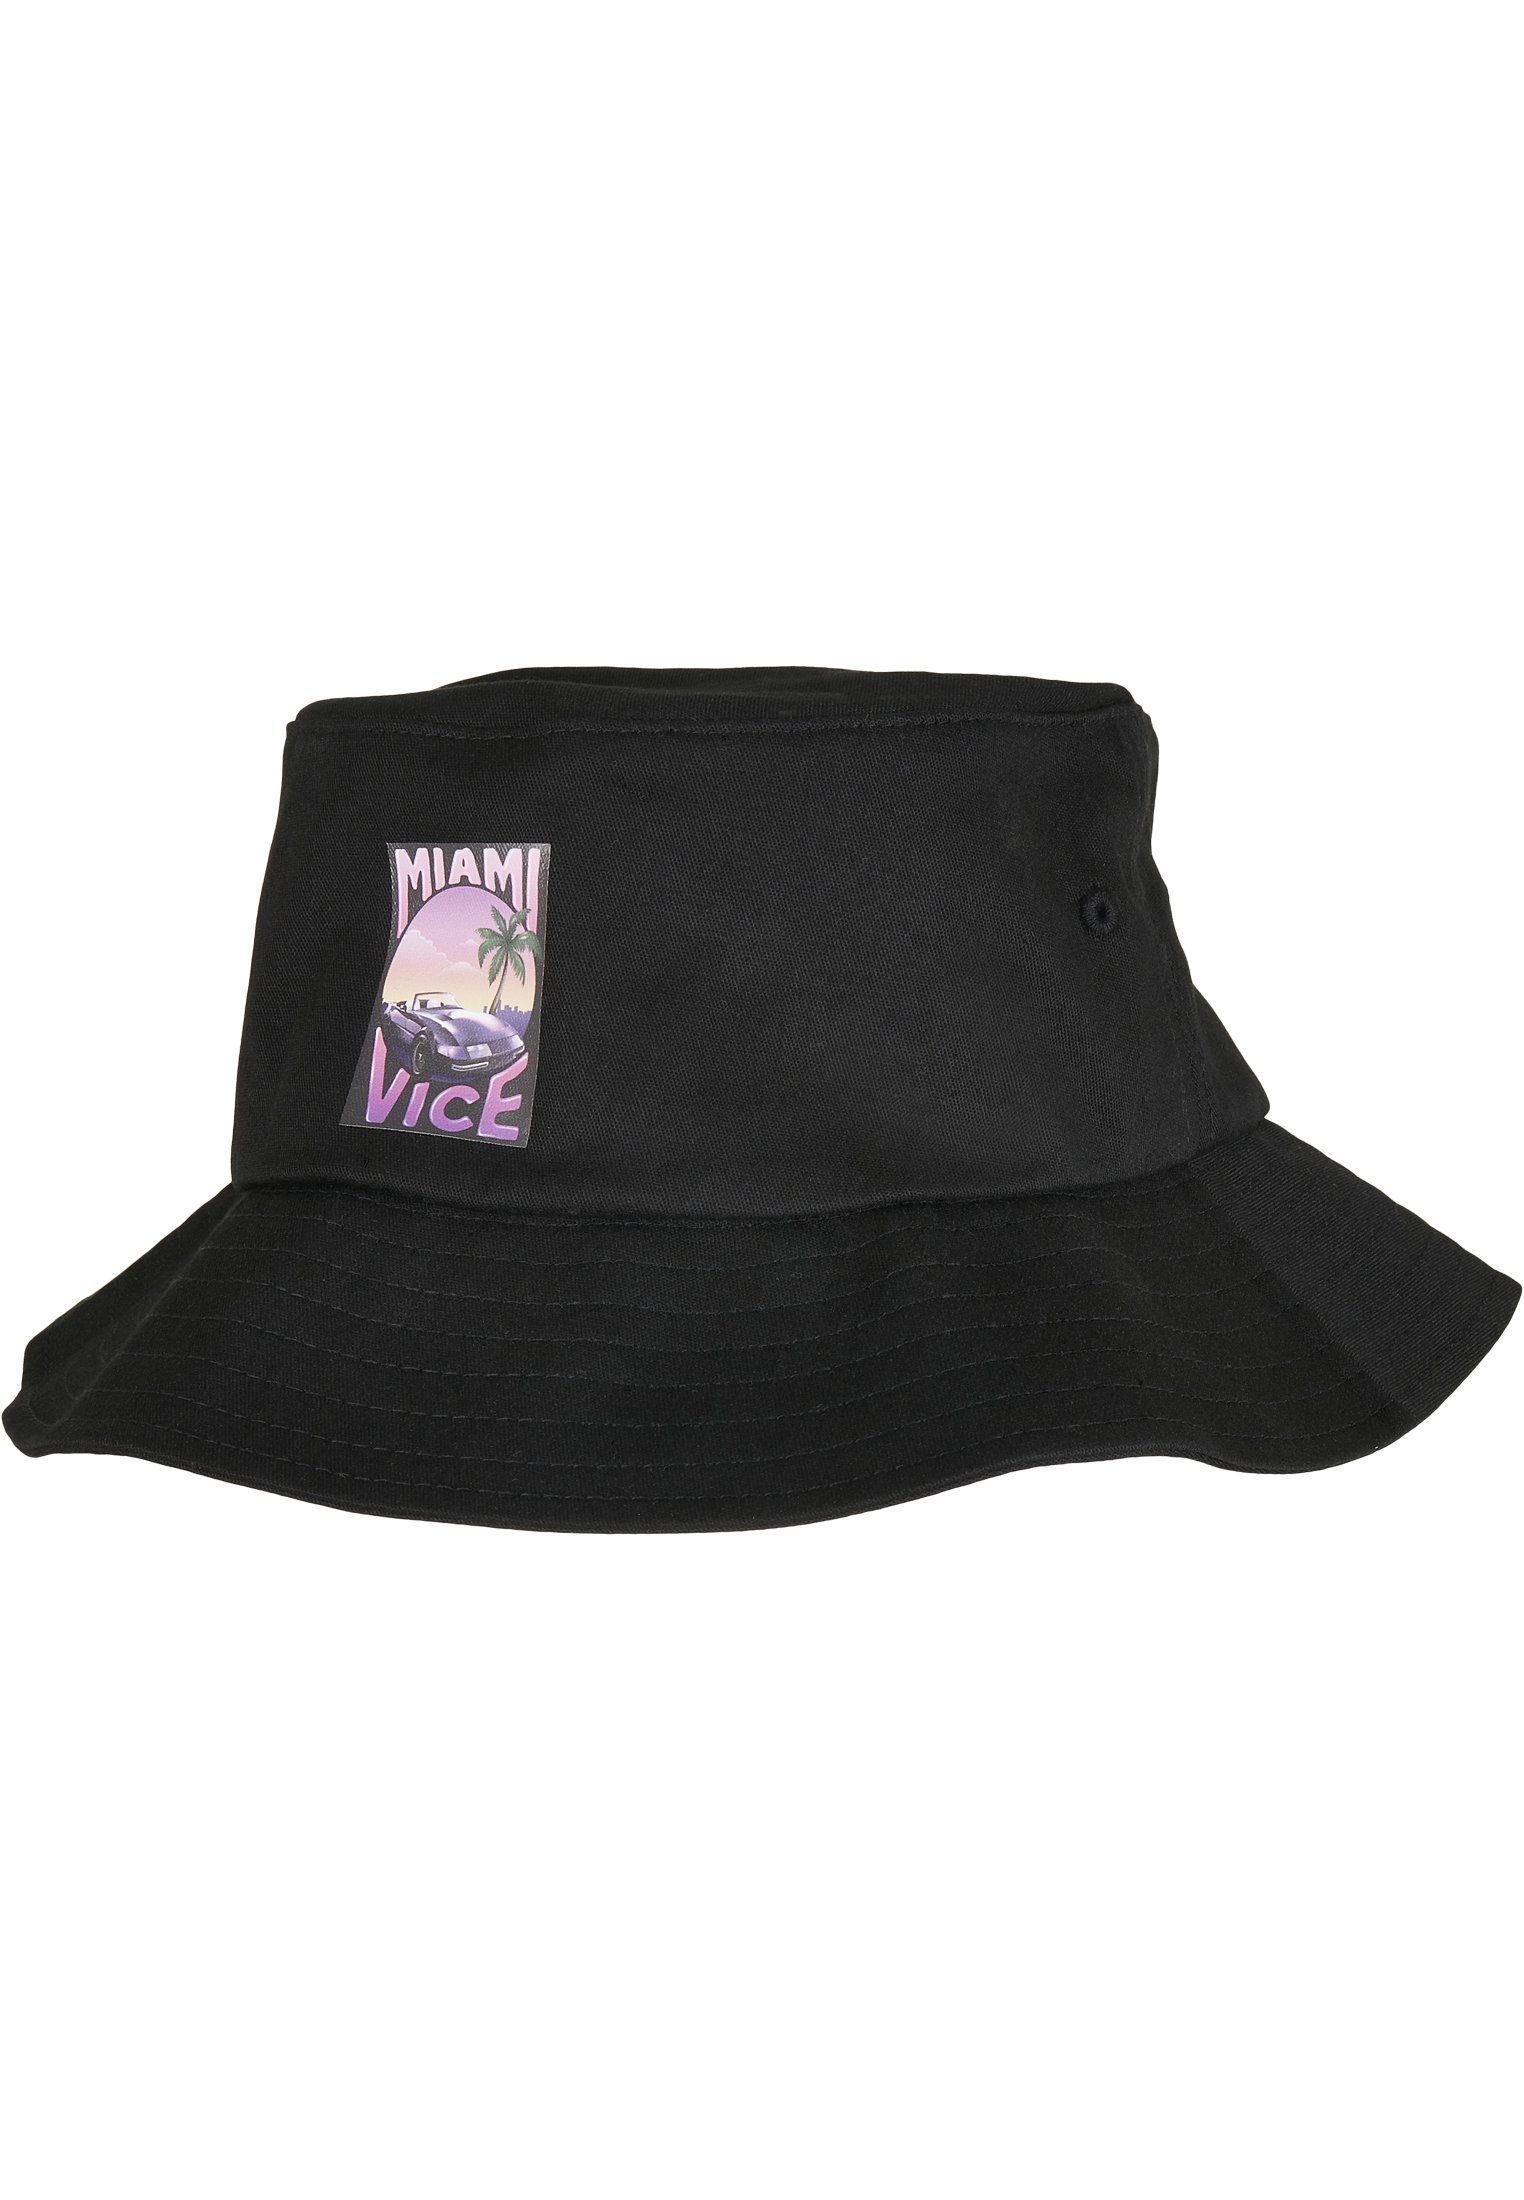 Cap Hat Merchcode Bucket Flex Print Hat Bucket Miami Vice